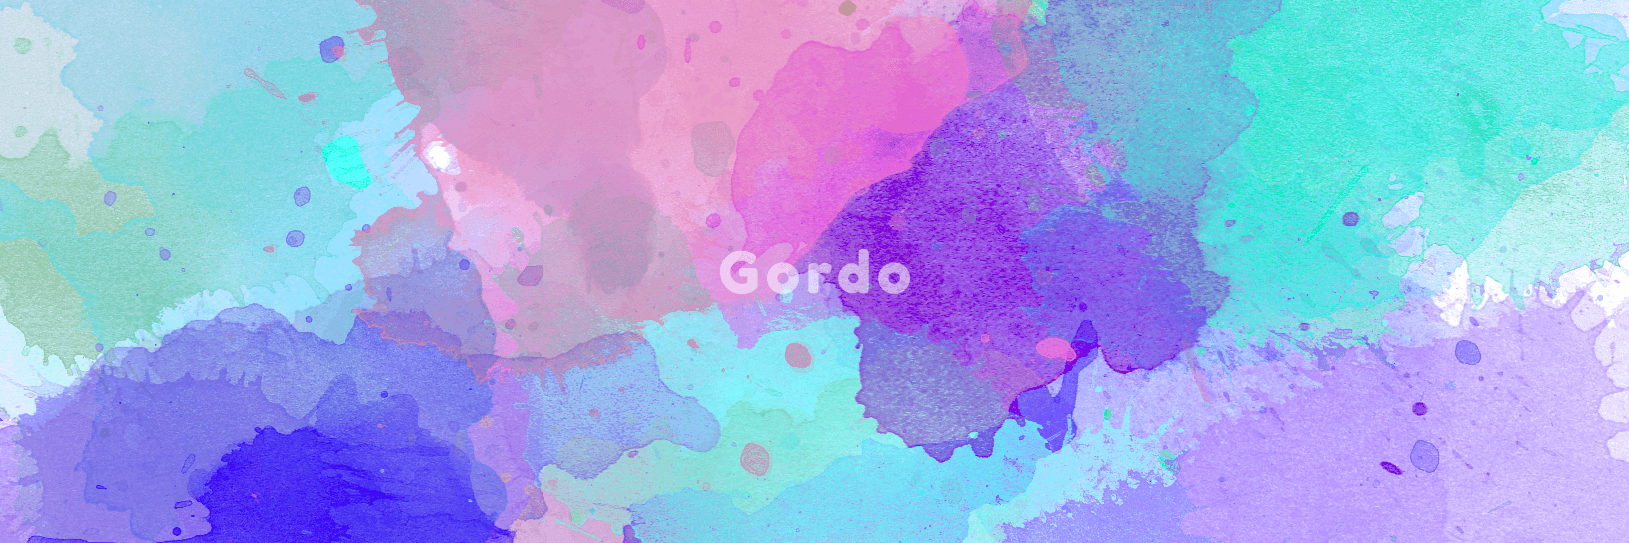 Gordo-design banner